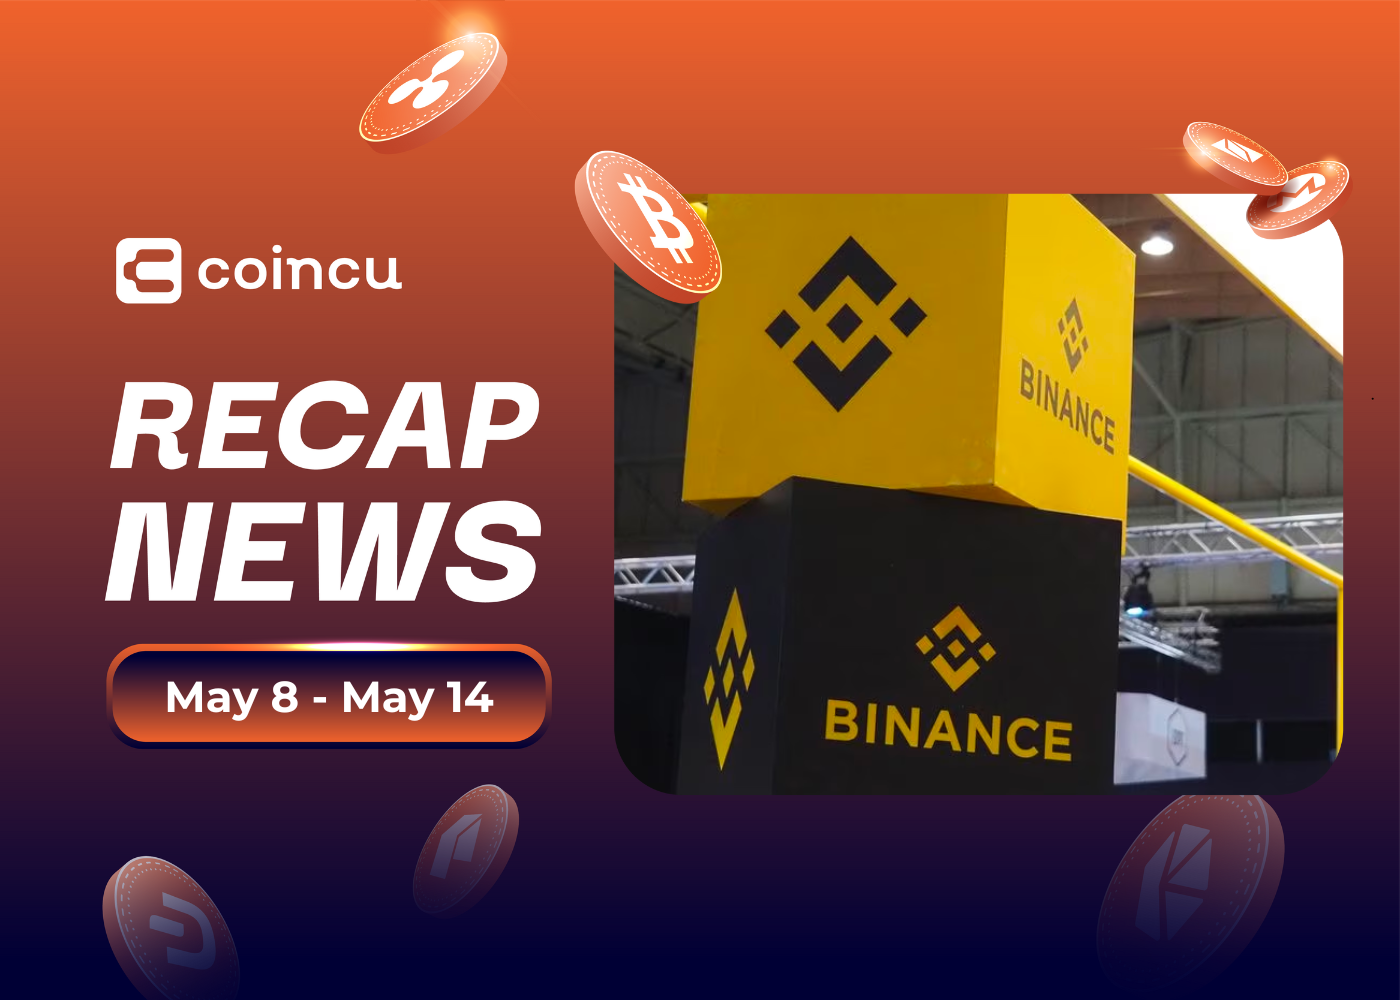 Weekly Top Crypto News (May 8 - May 14)